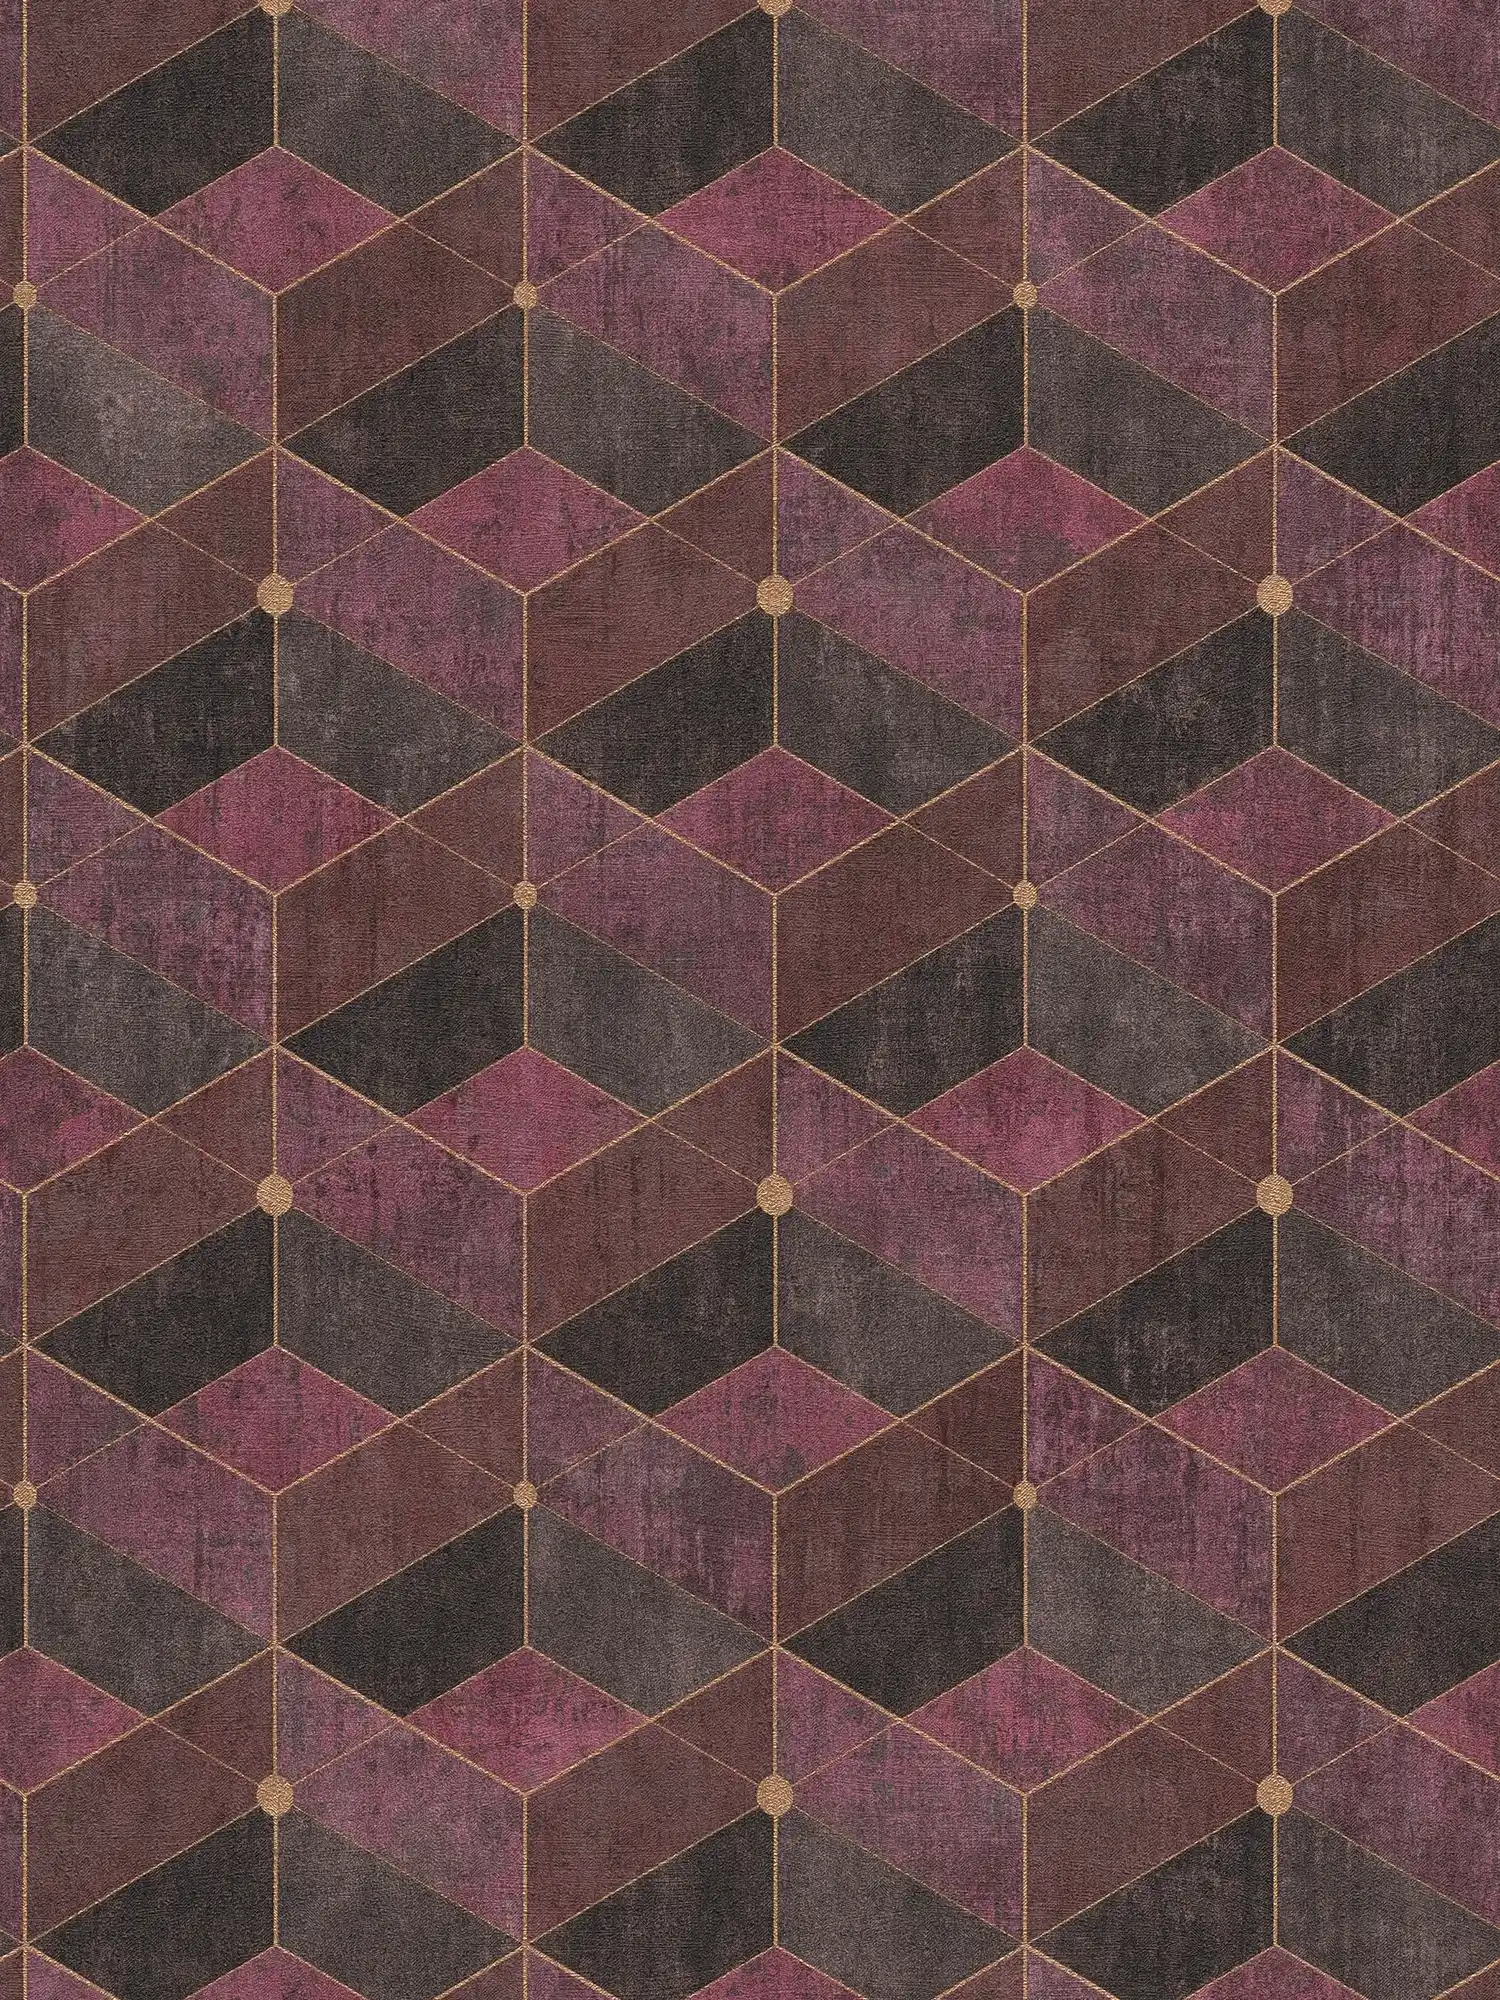 Non-woven wallpaper with retro graphic pattern, purple & gold
